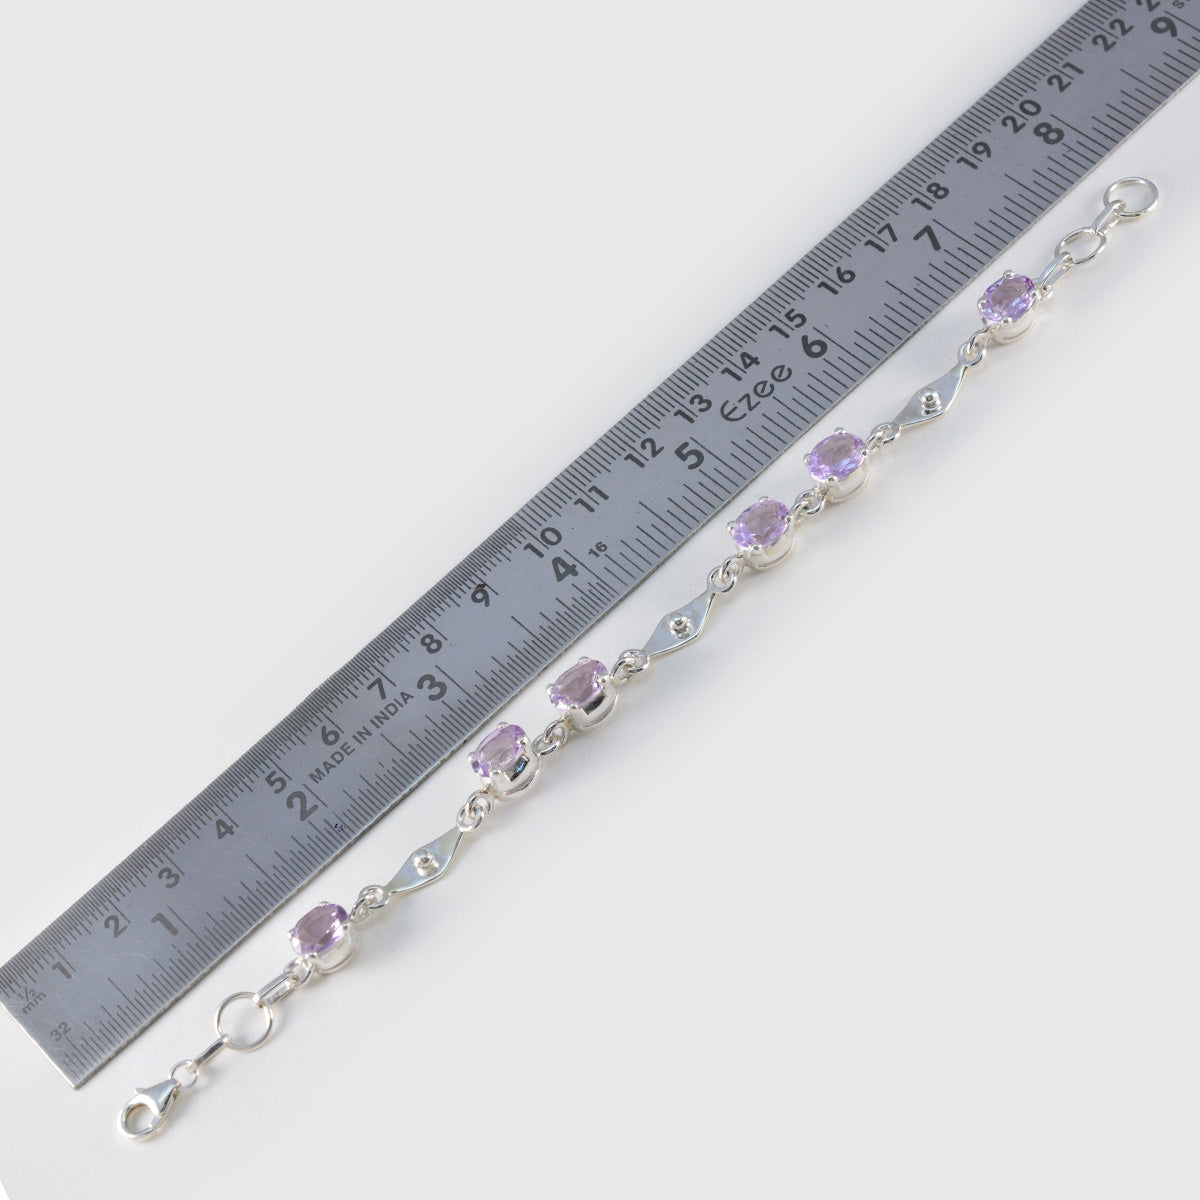 Riyo classique en argent sterling 925 bracelet pour femme bracelet en améthyste bracelet à griffes avec hameçon bracelet à maillons taille L 6-8,5 pouces.